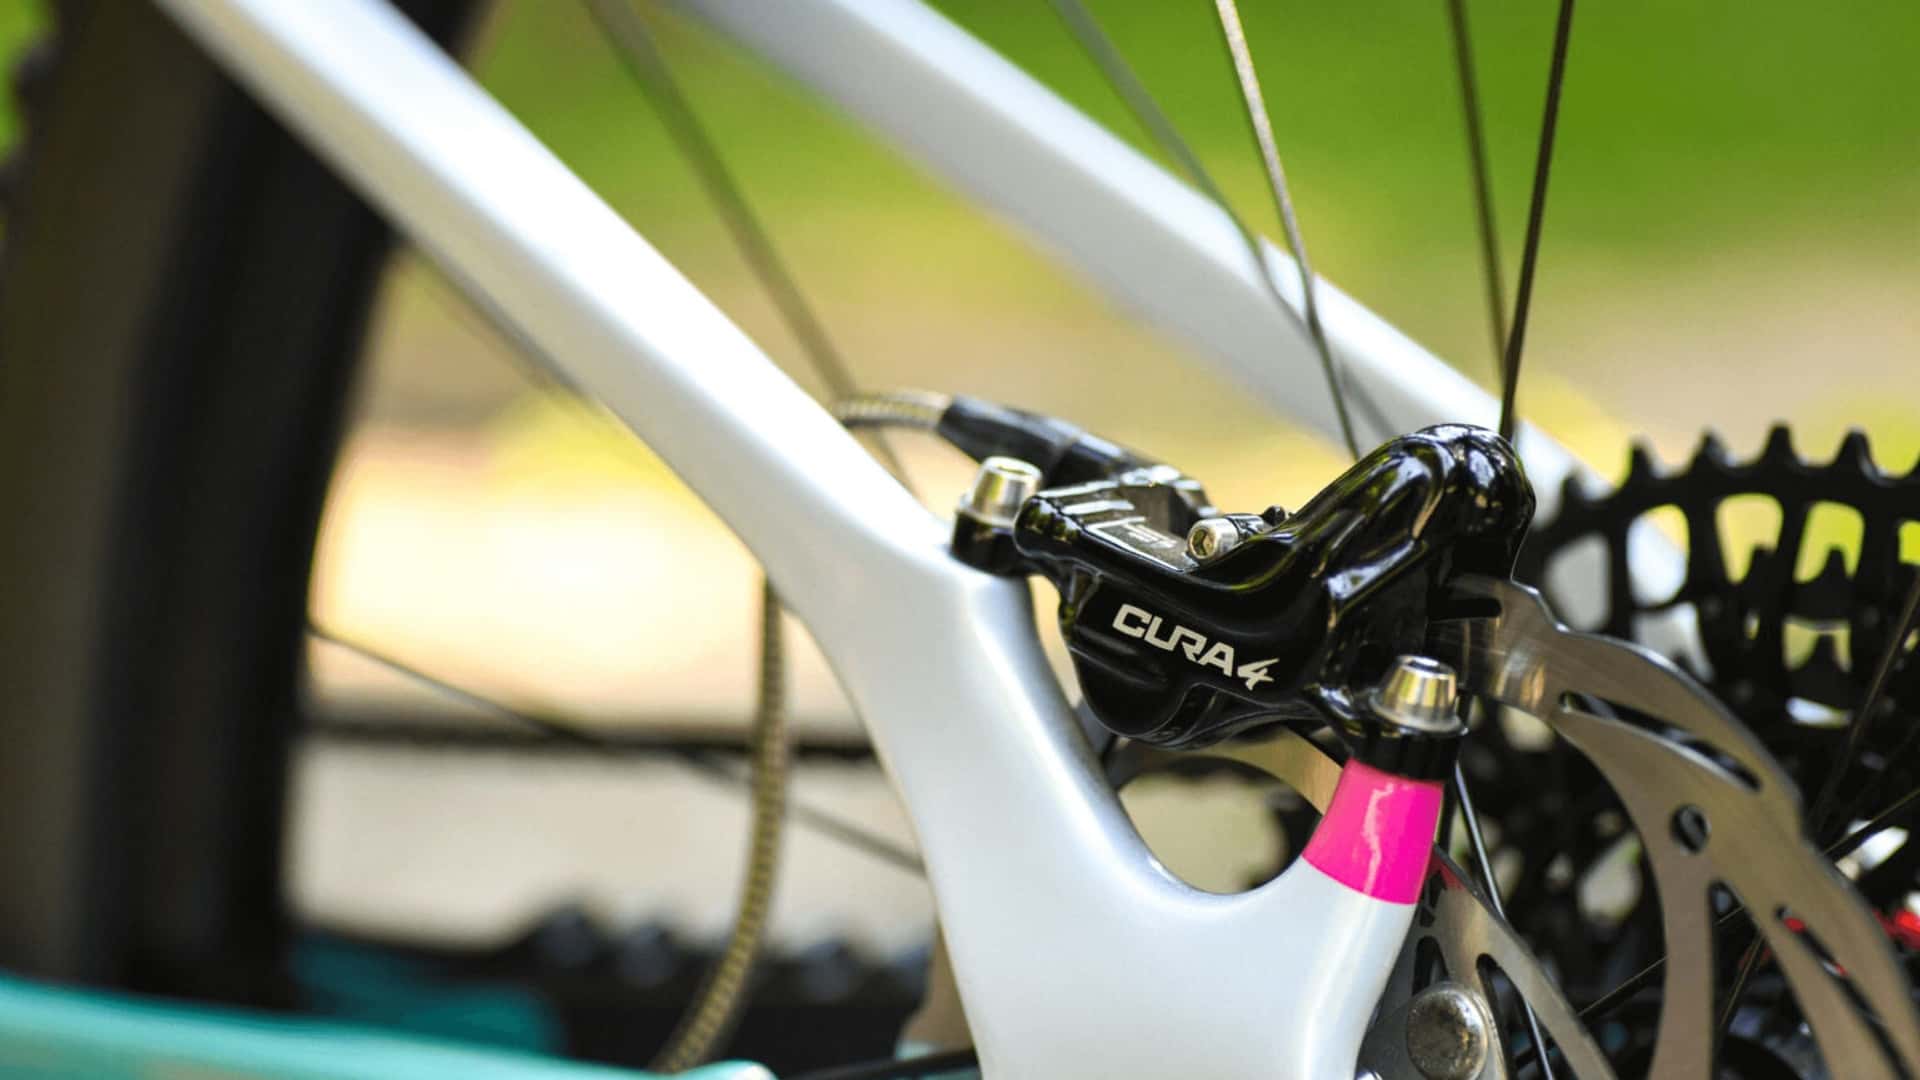 greyp presents all-new zaney electric mountain bike